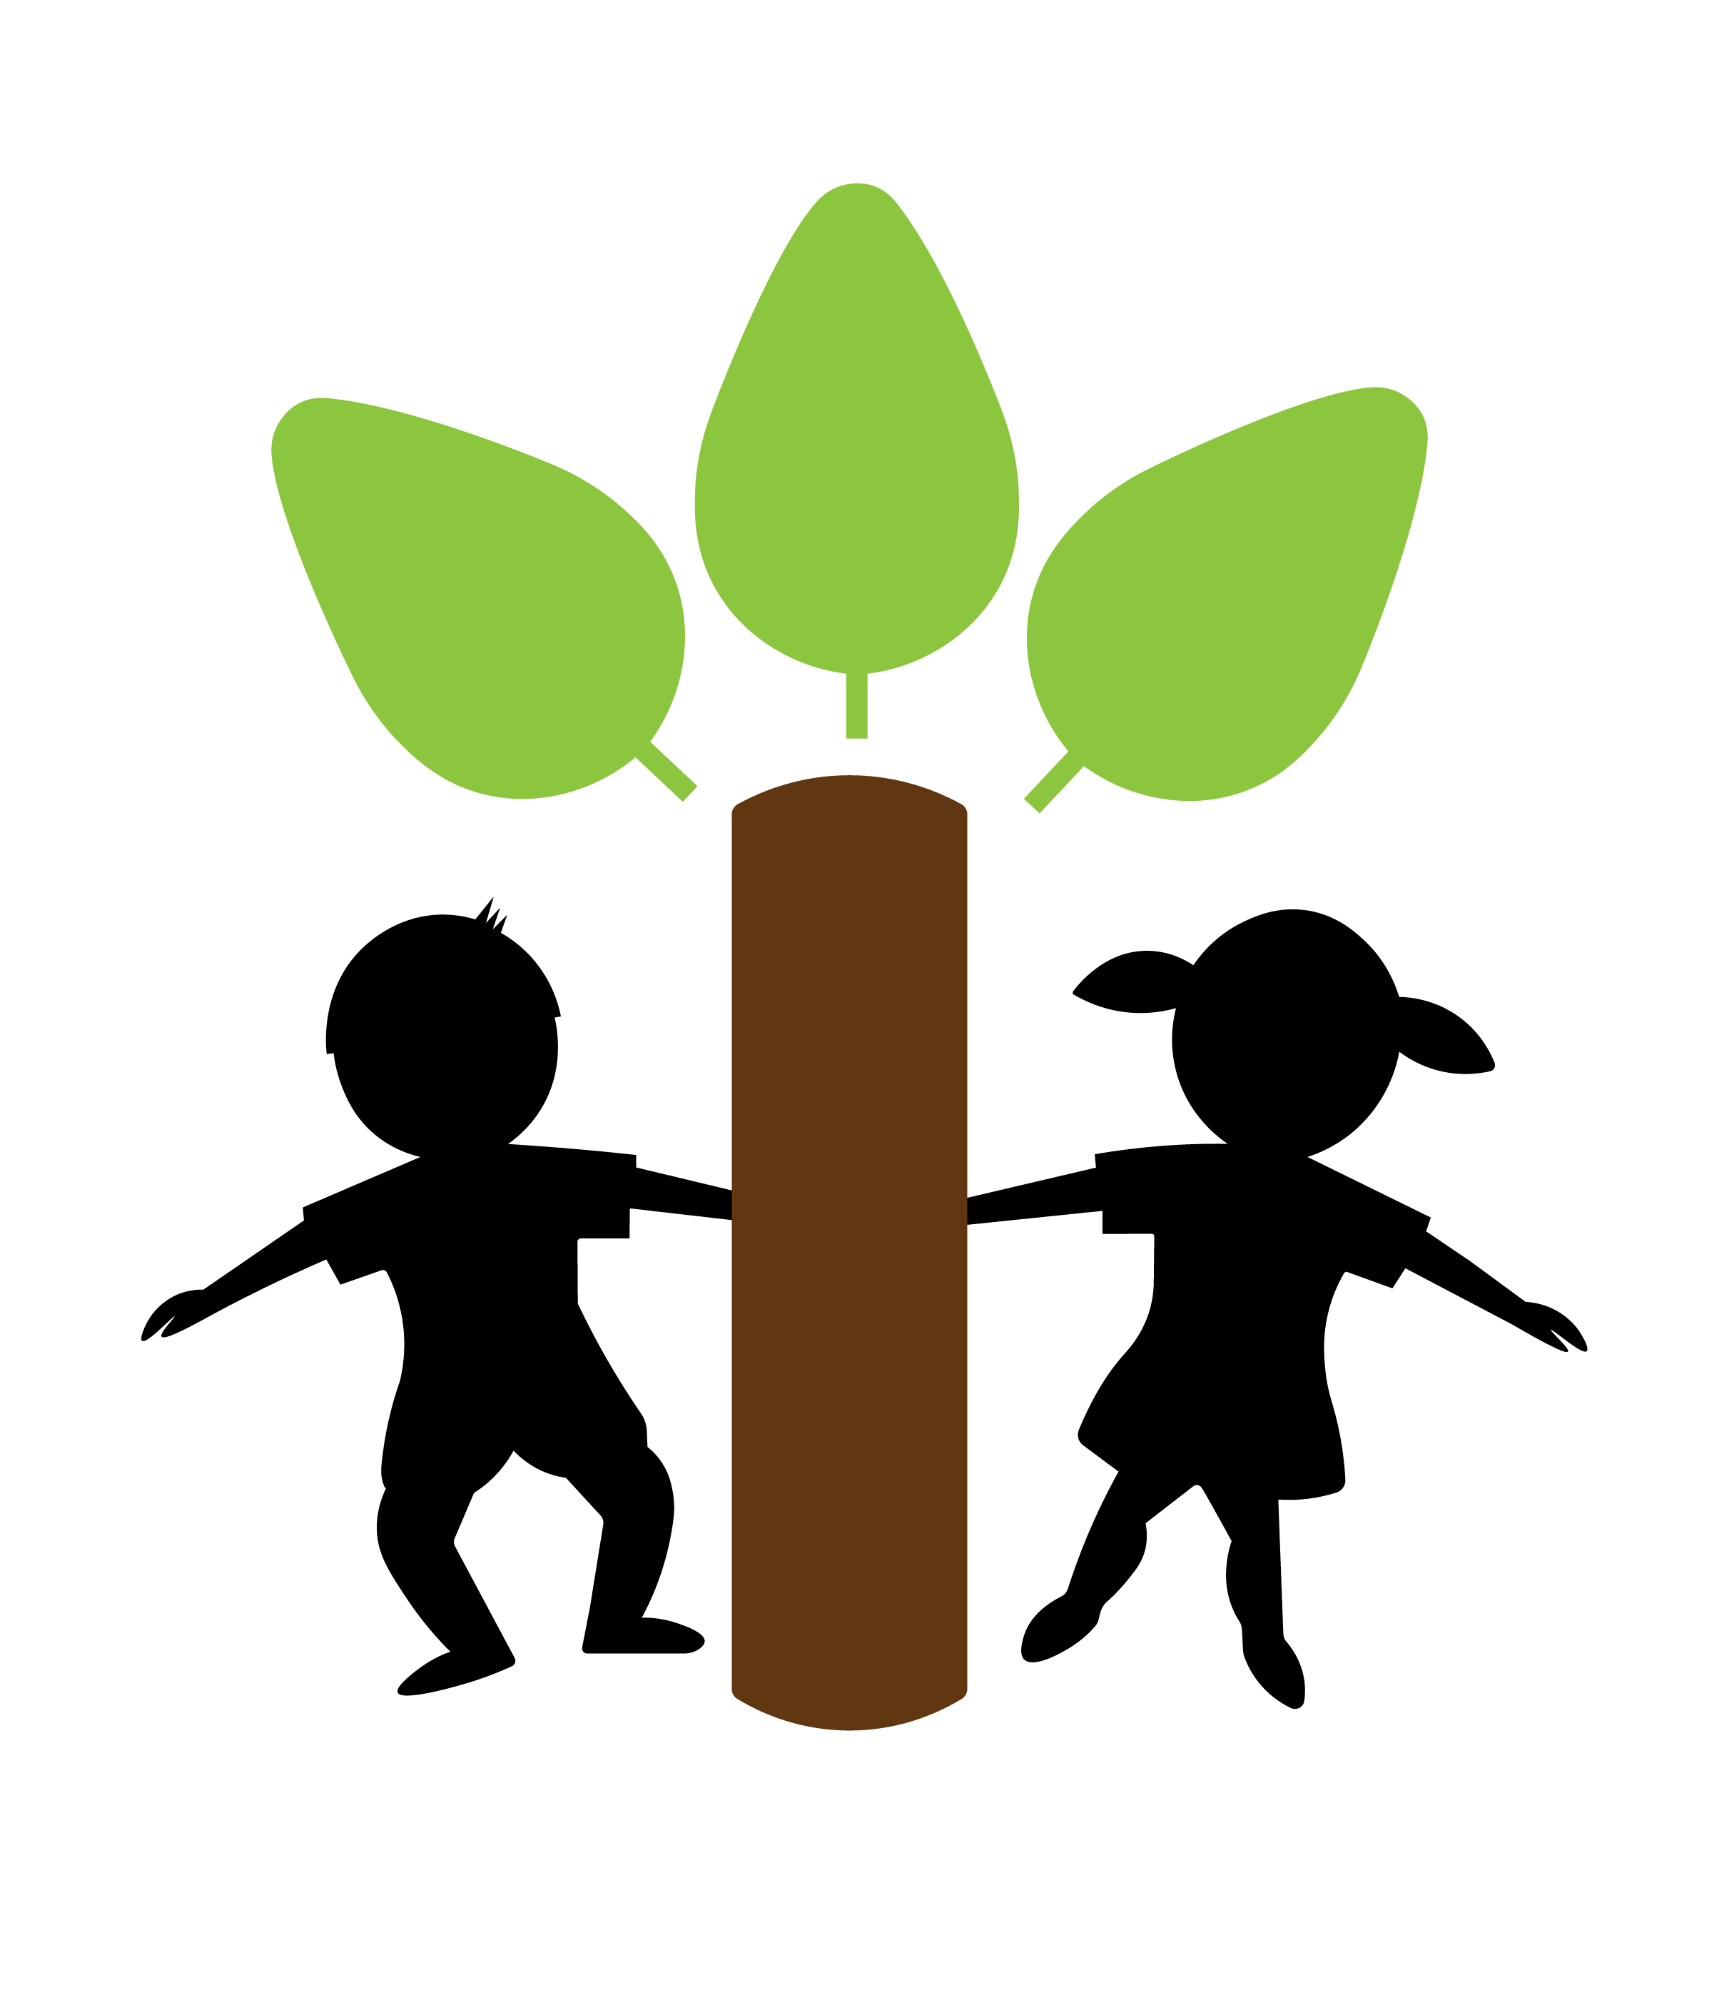 Iver Village Infant Academy